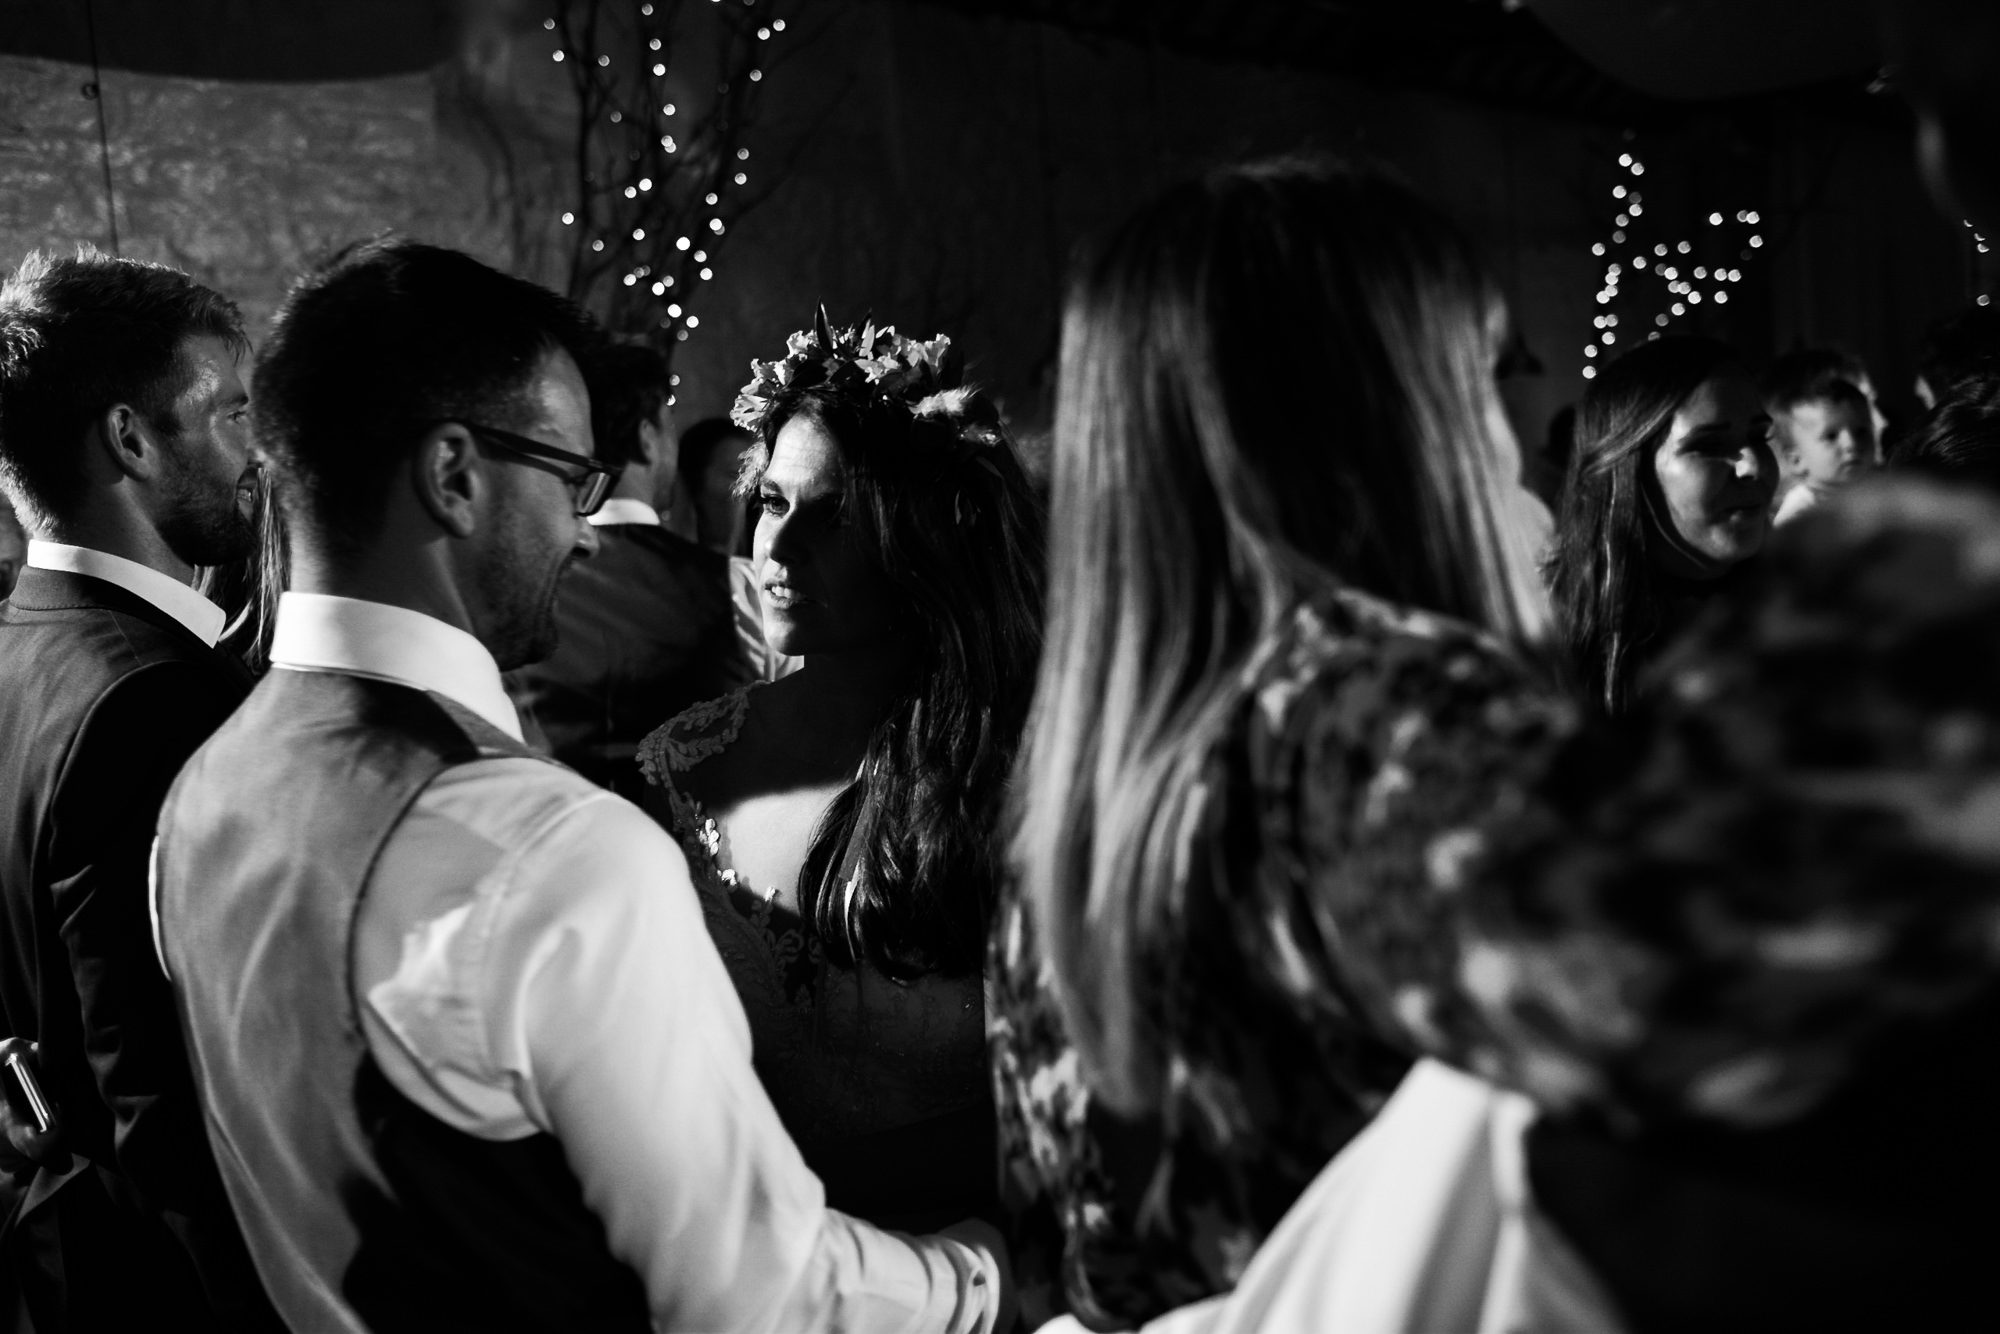 intimate moment between bride and groom on dance floor